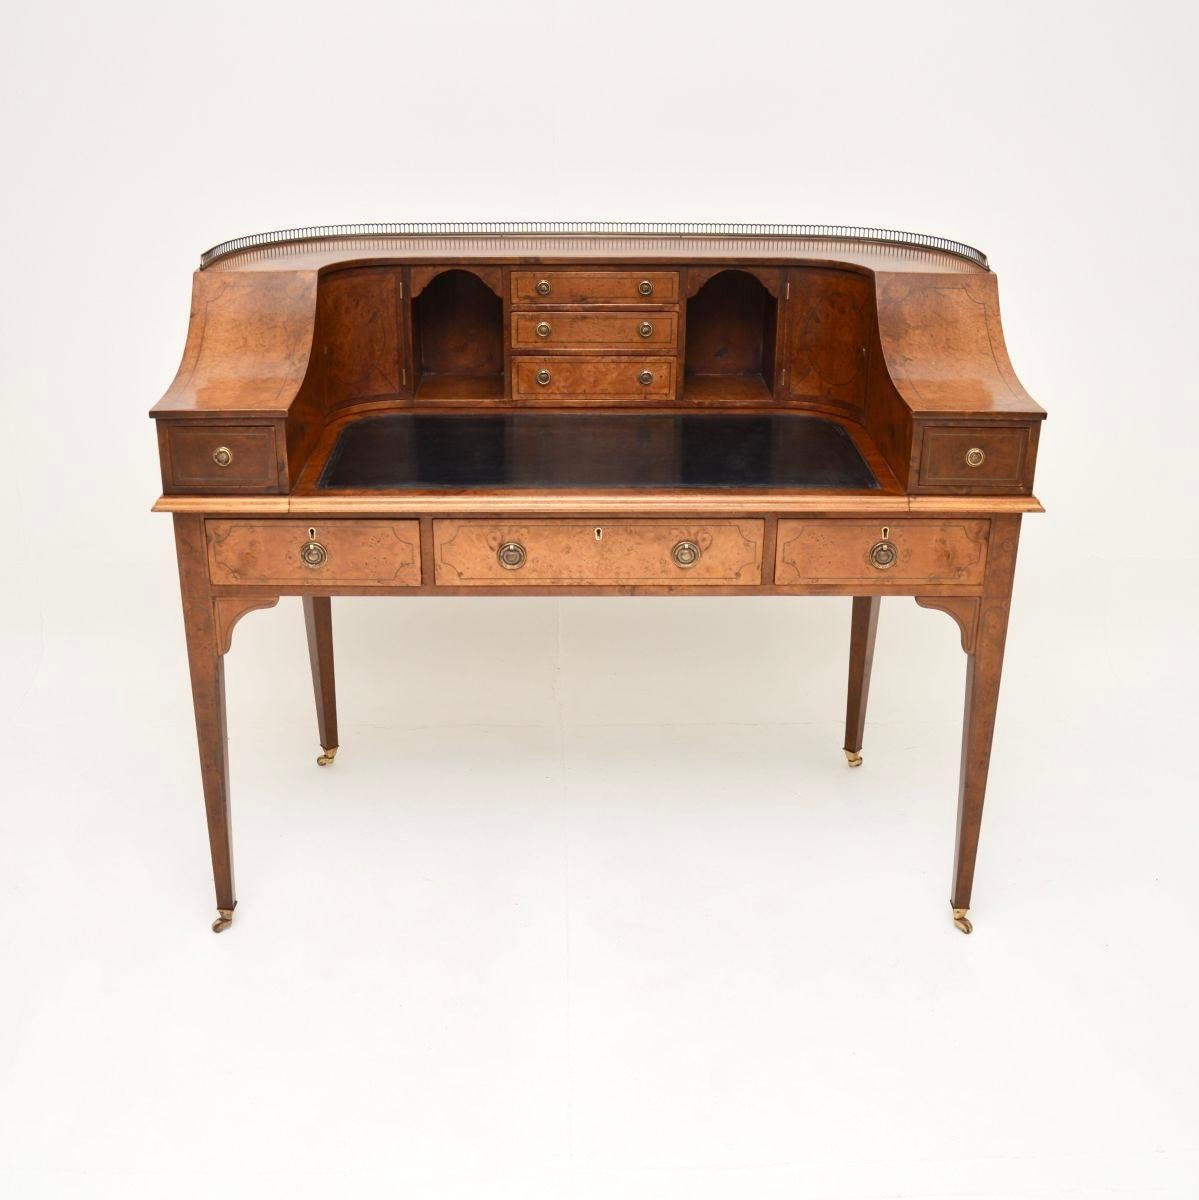 Una superba scrivania antica in radica di noce Carlton House, realizzata in Inghilterra e risalente al periodo 1890-1910 circa.

Si tratta di un prodotto di qualità eccezionale, con molte caratteristiche incantevoli. È di grandi dimensioni, con